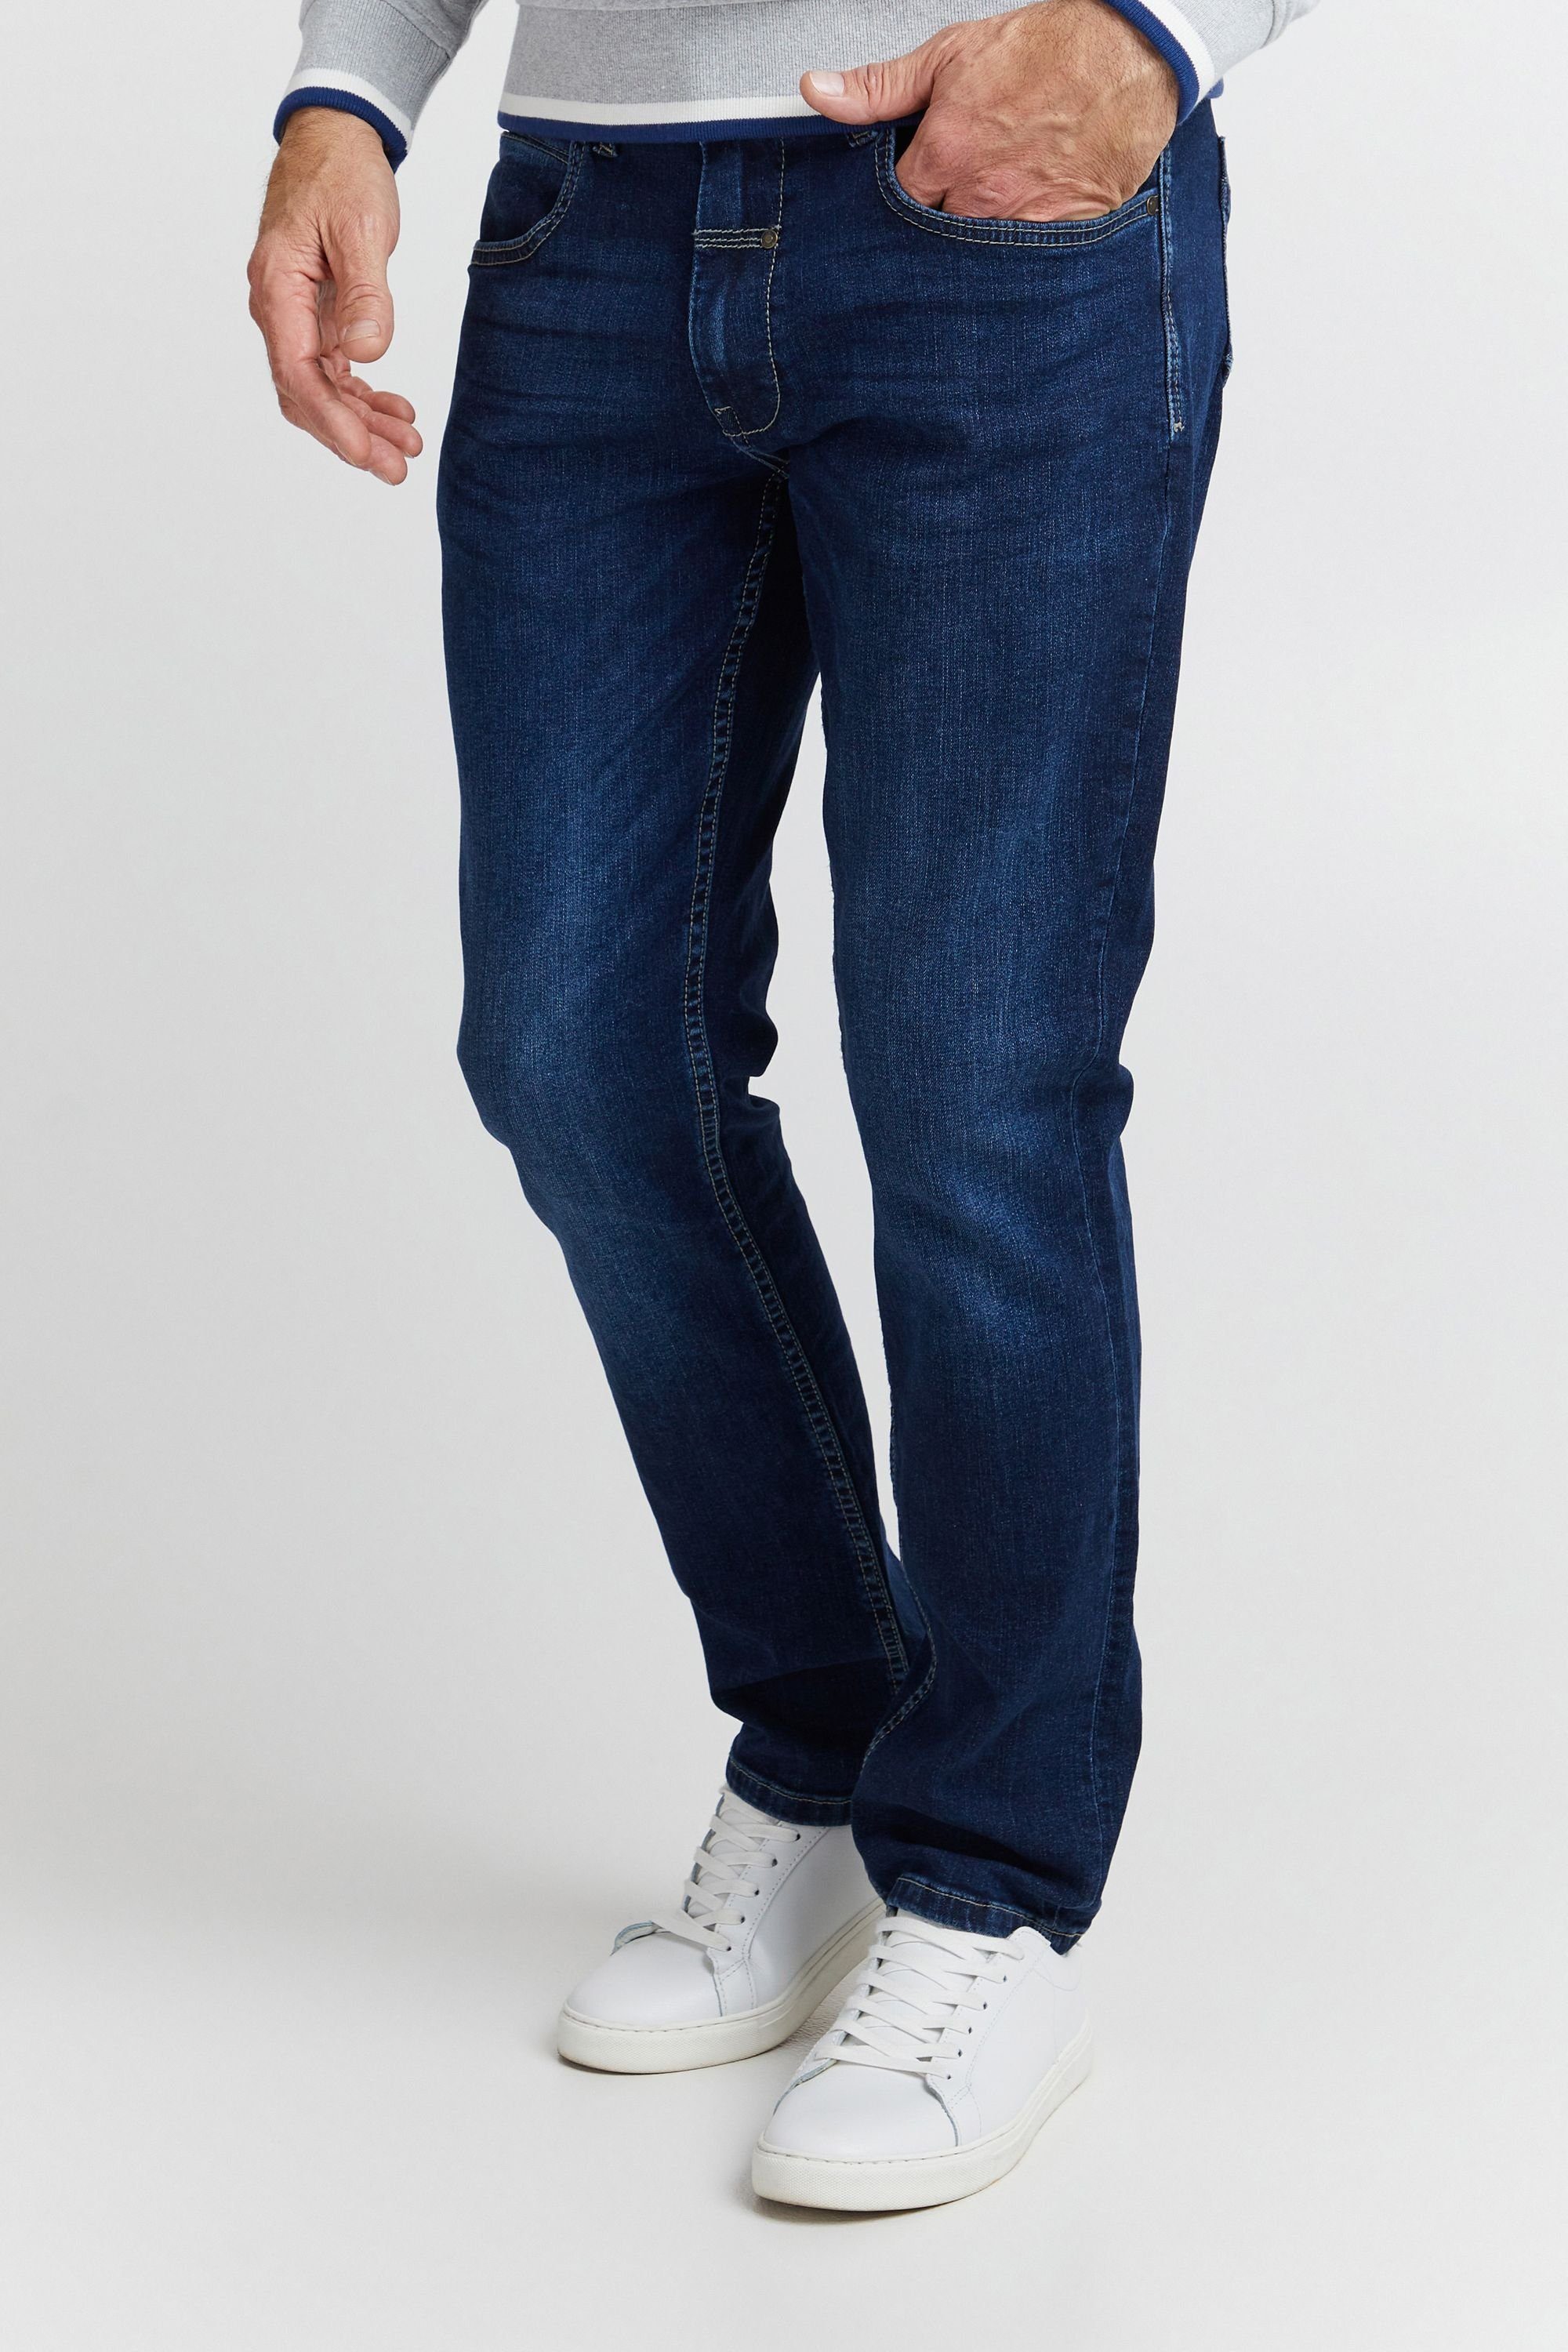 FQ1924 FQ1924 blue dark Denim FQRoman 5-Pocket-Jeans